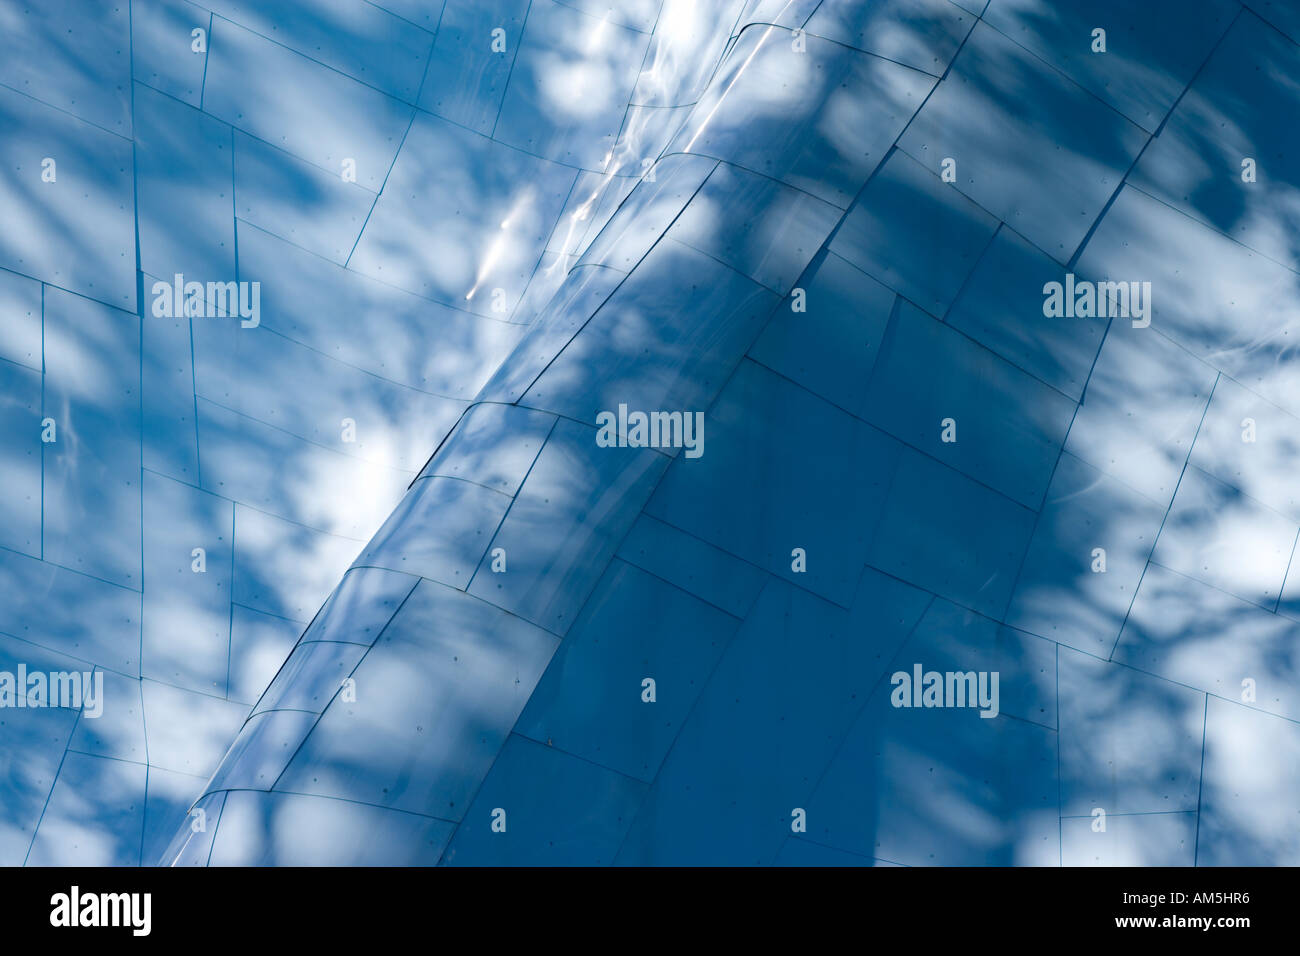 Seattle Center Science Fiction Museum und Hall Of Fame, außen. Schatten der Bäume auf gekrümmten blauen Metall-Cladding. Stockfoto